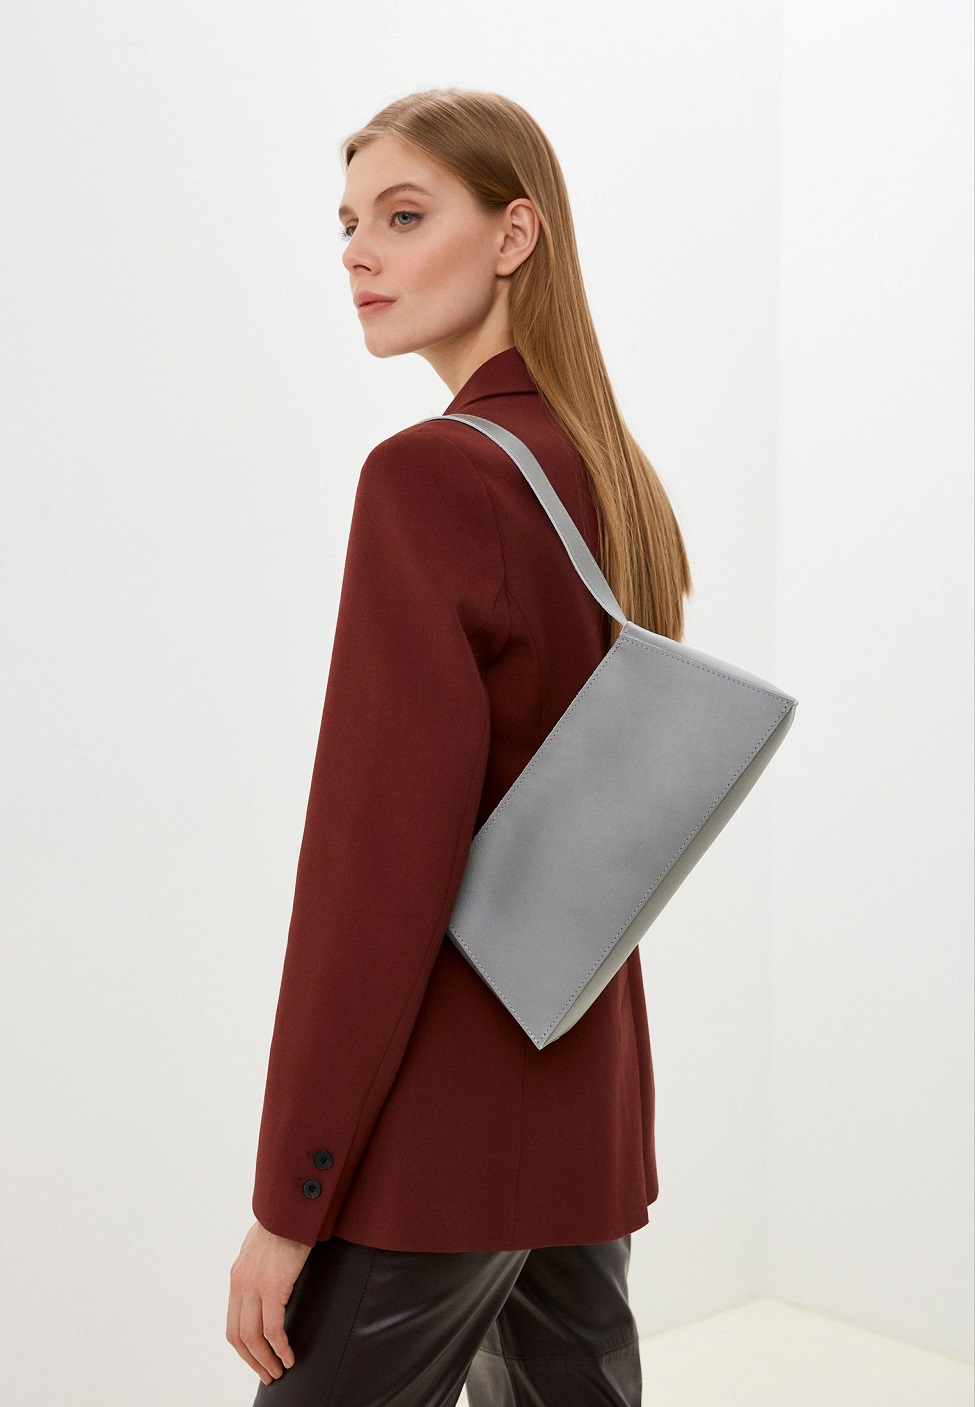 Женская кожаная сумка-багет серая A036 grey